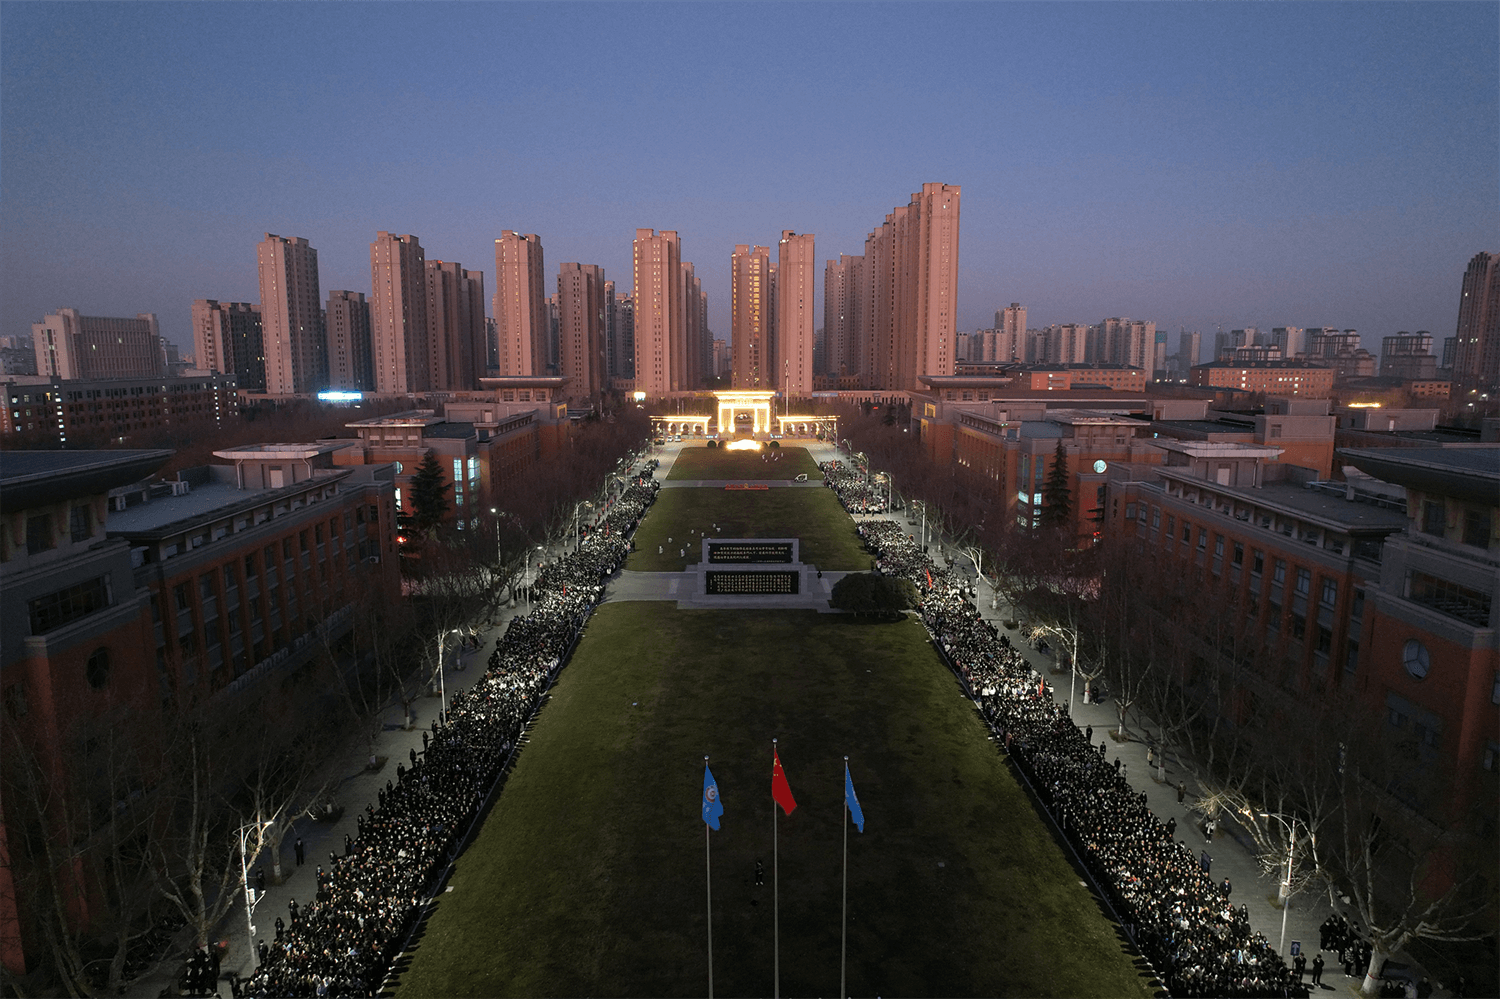 郑州商学院平面图高清图片